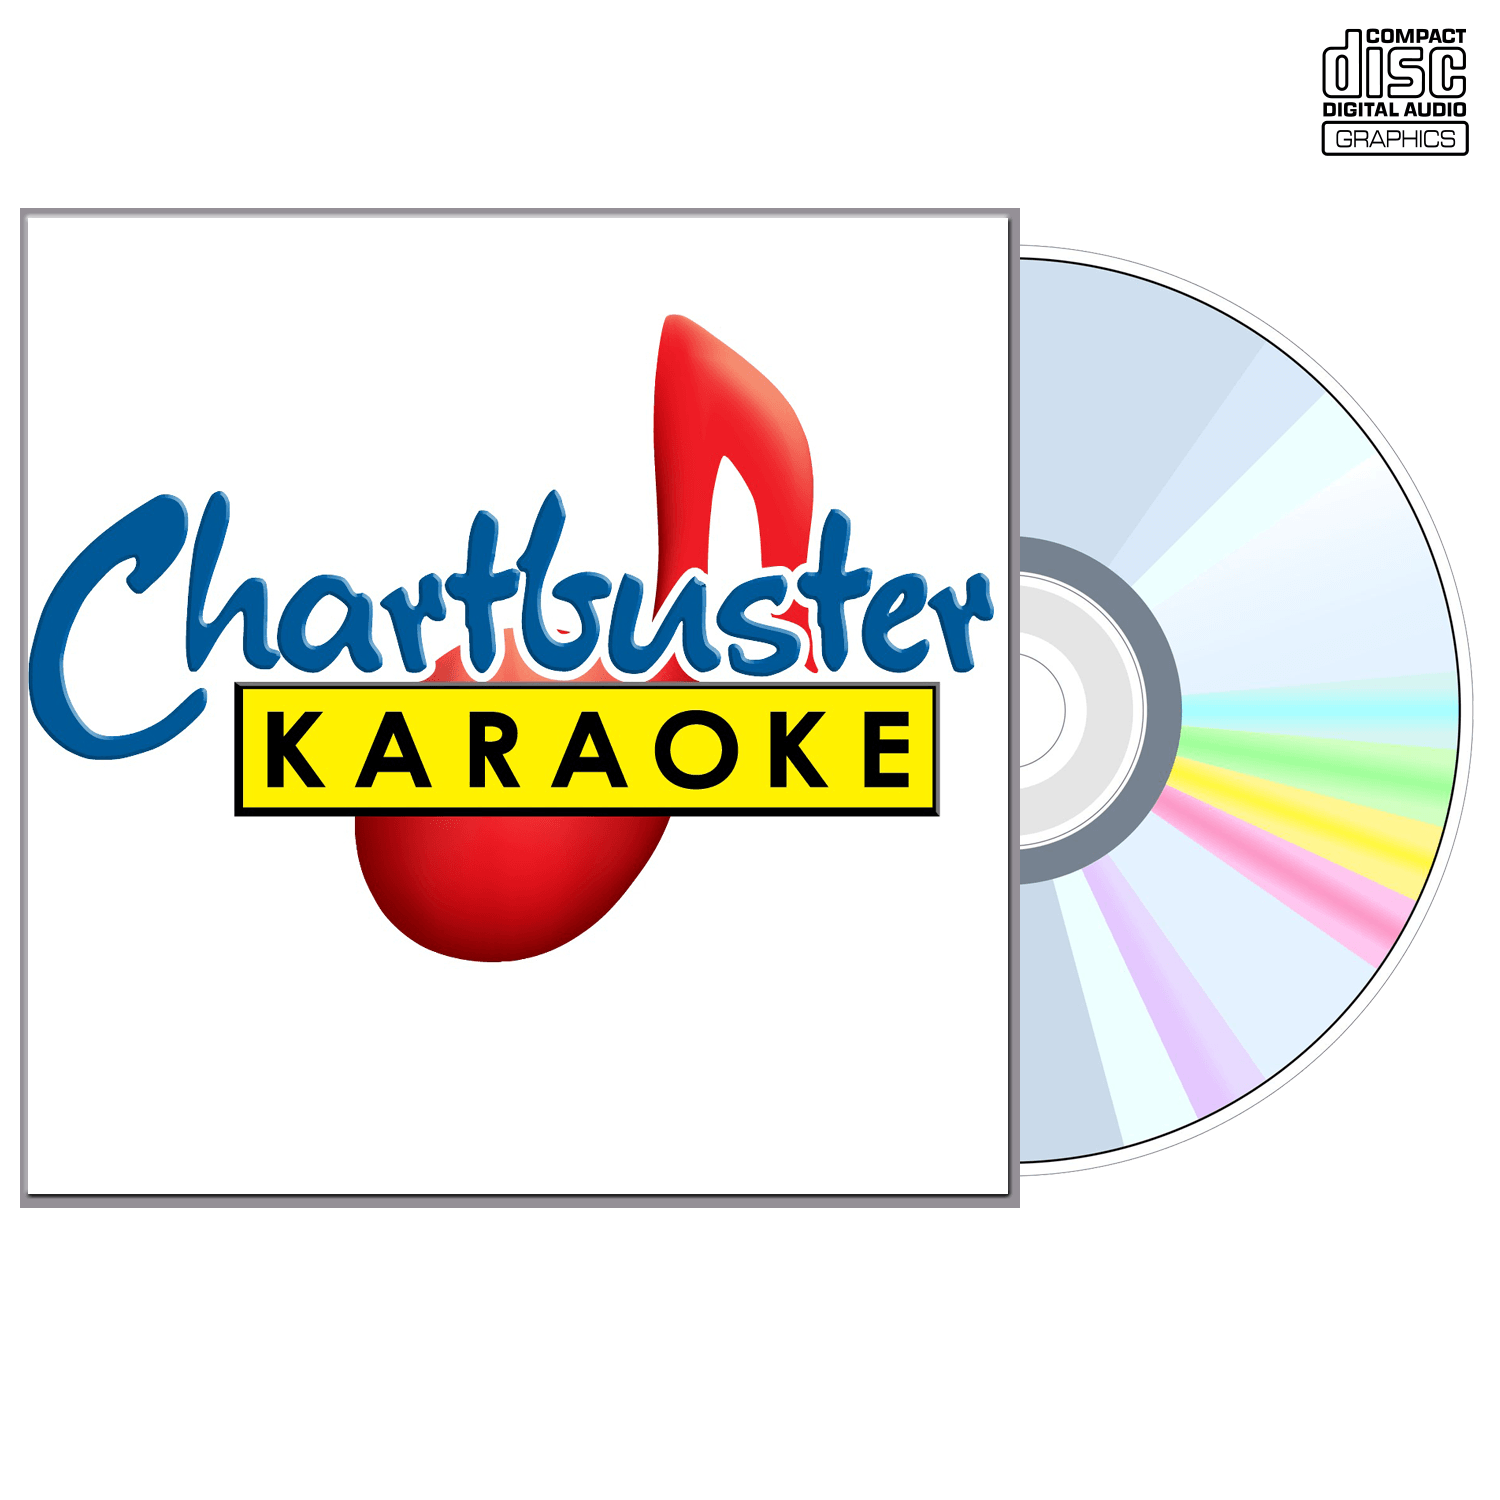 Jack Greene - CD+G - Chartbuster Karaoke - Karaoke Home Entertainment